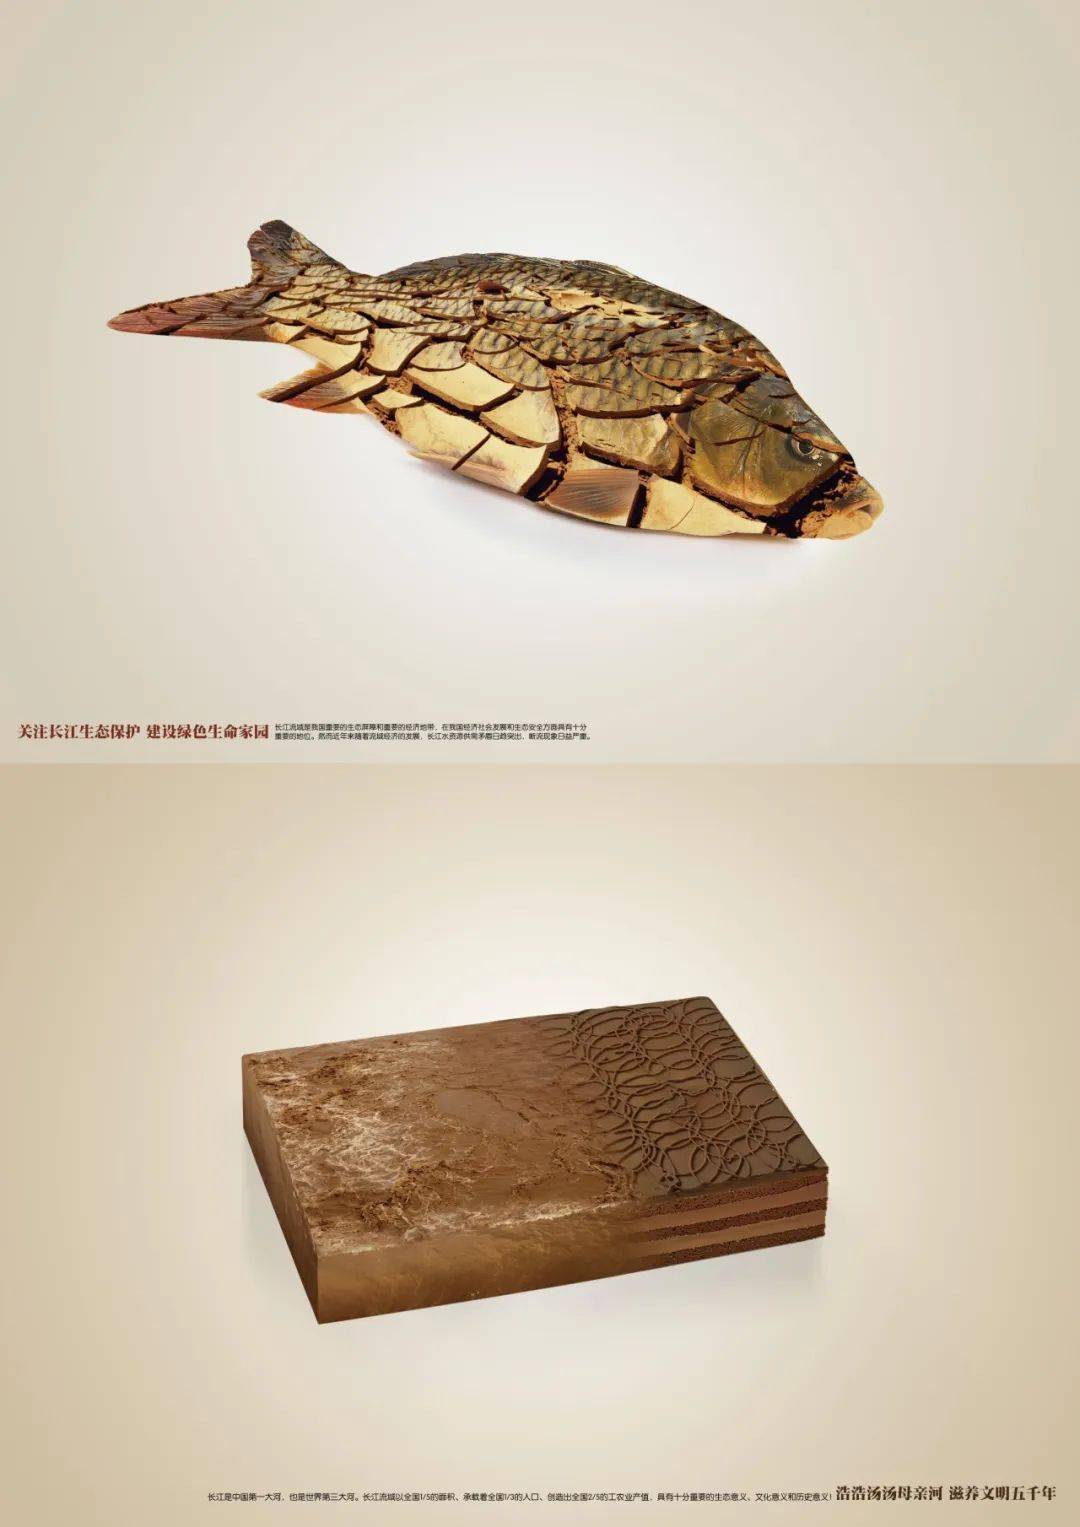 2023弘扬长江文化,守护水生生物主题公益海报设计大赛获奖作品公示